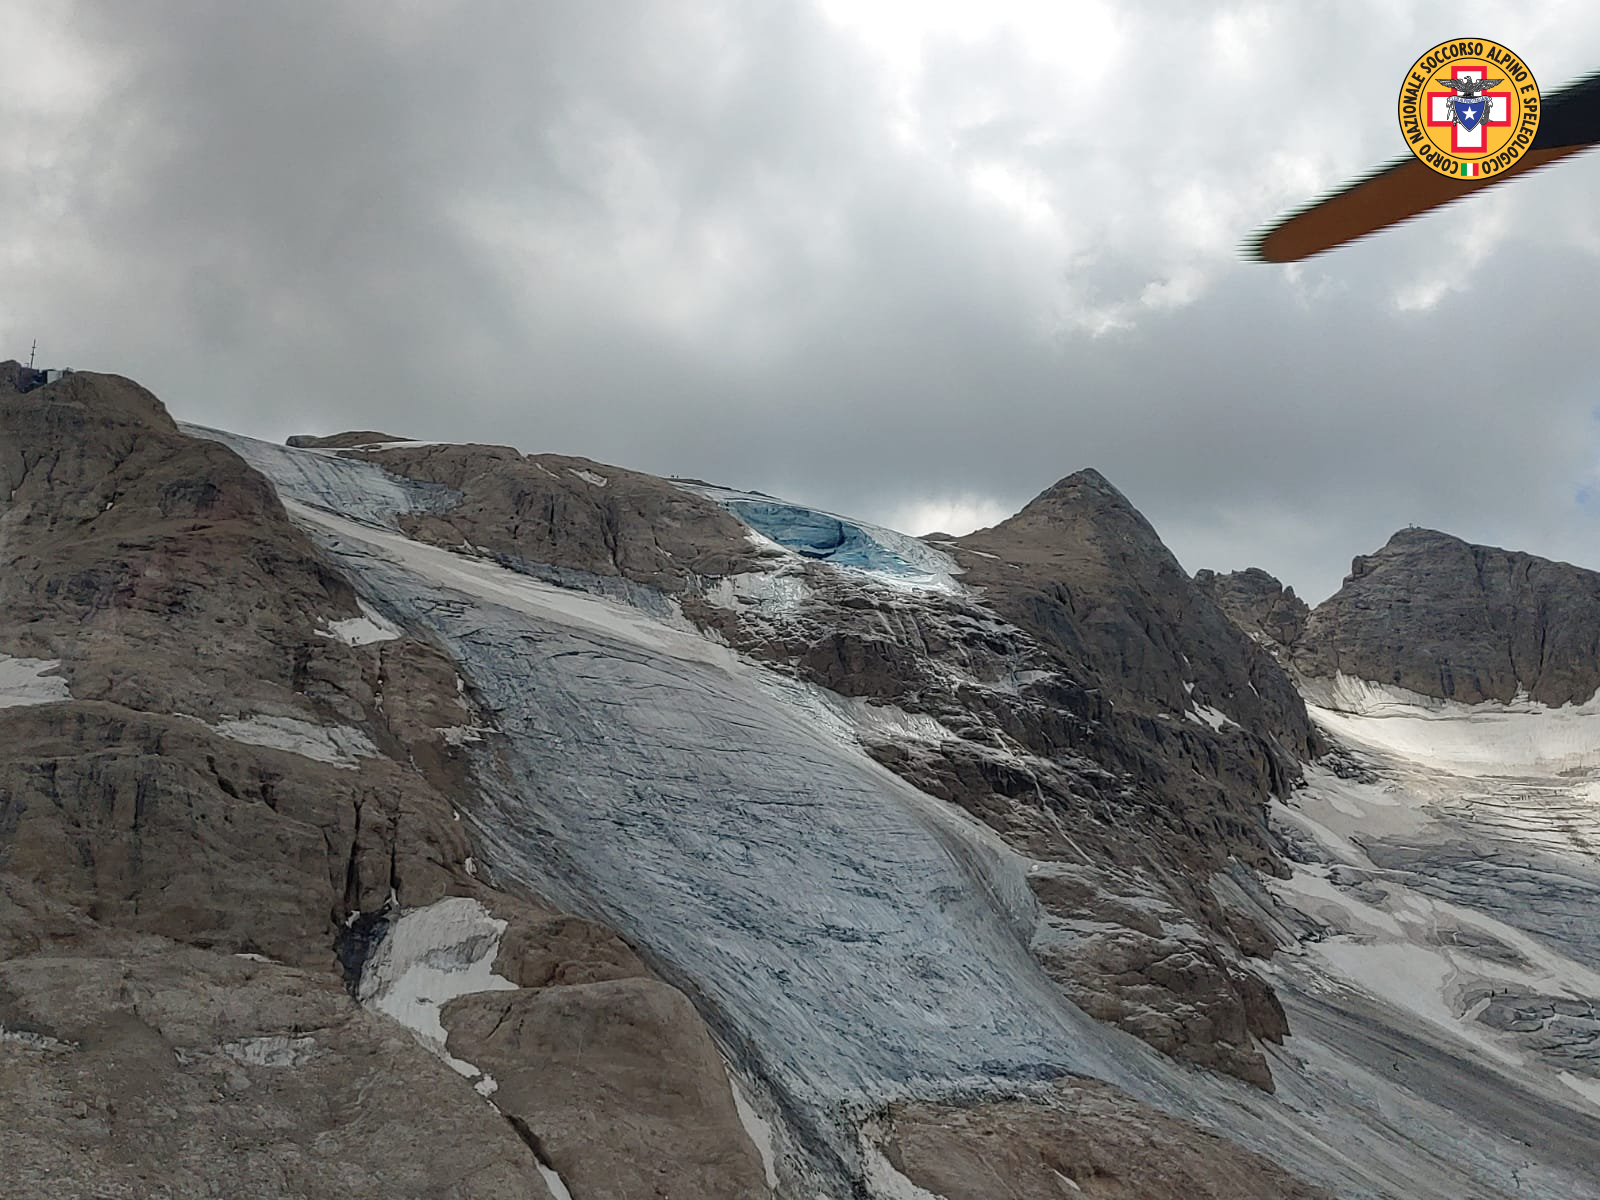 Crolla parte di ghiacciaio sulla Marmolada, almeno 5 morti e diversi feriti